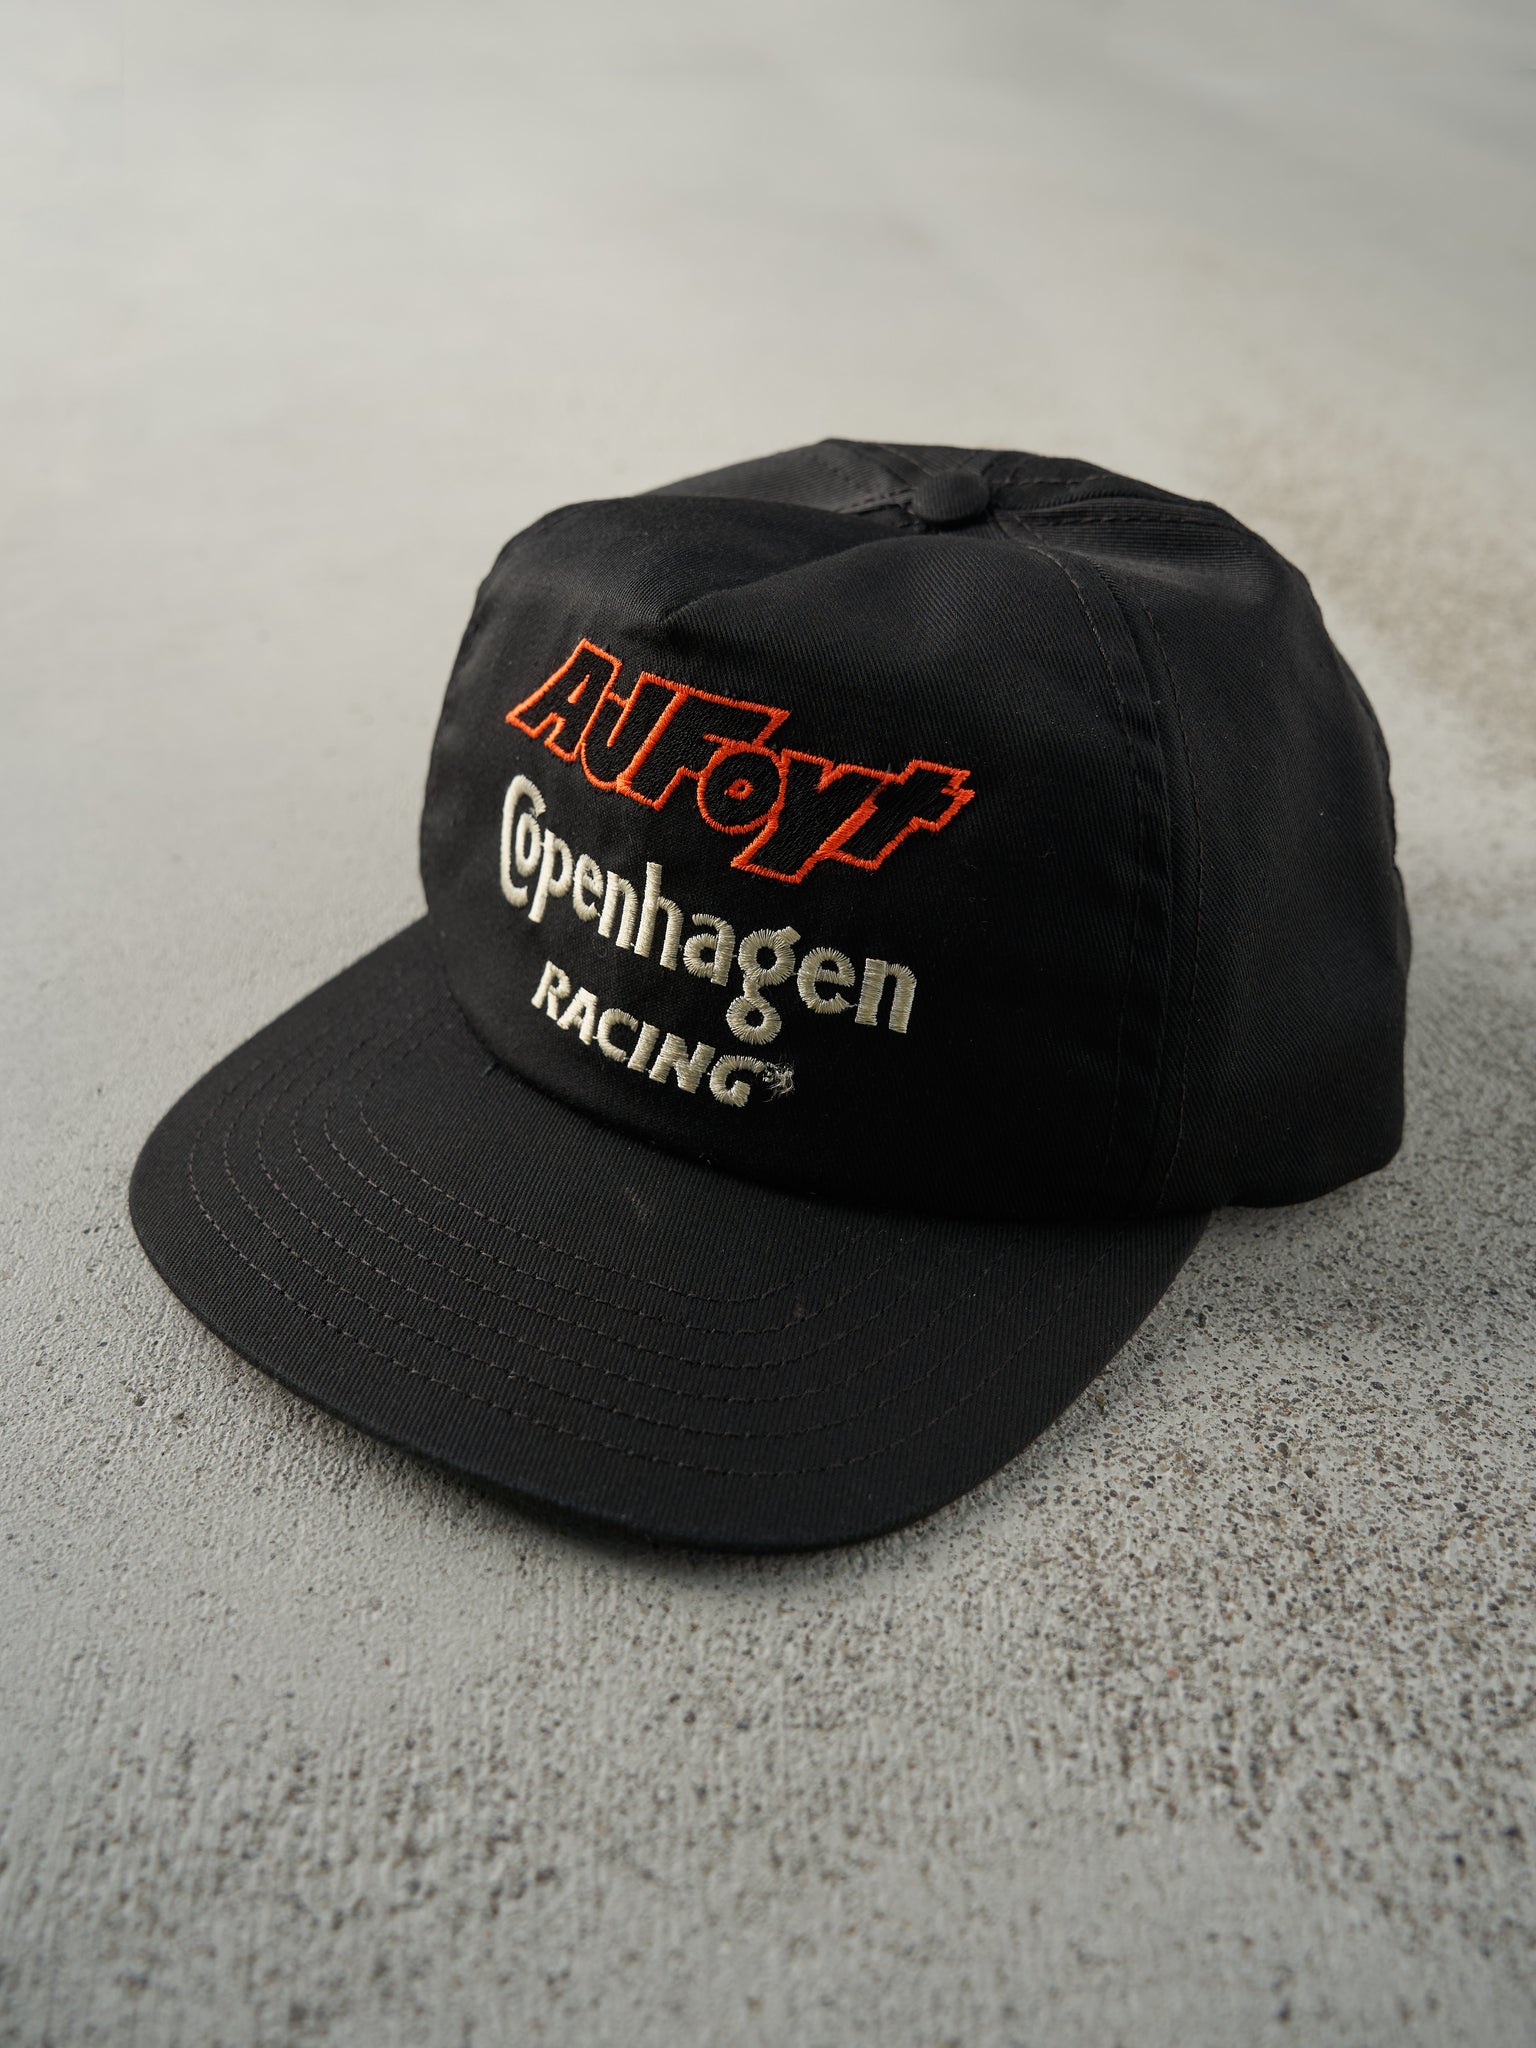 Vintage 80s Black Embroidered A.J.Foyt Copenhagen Racing Snapback Hat